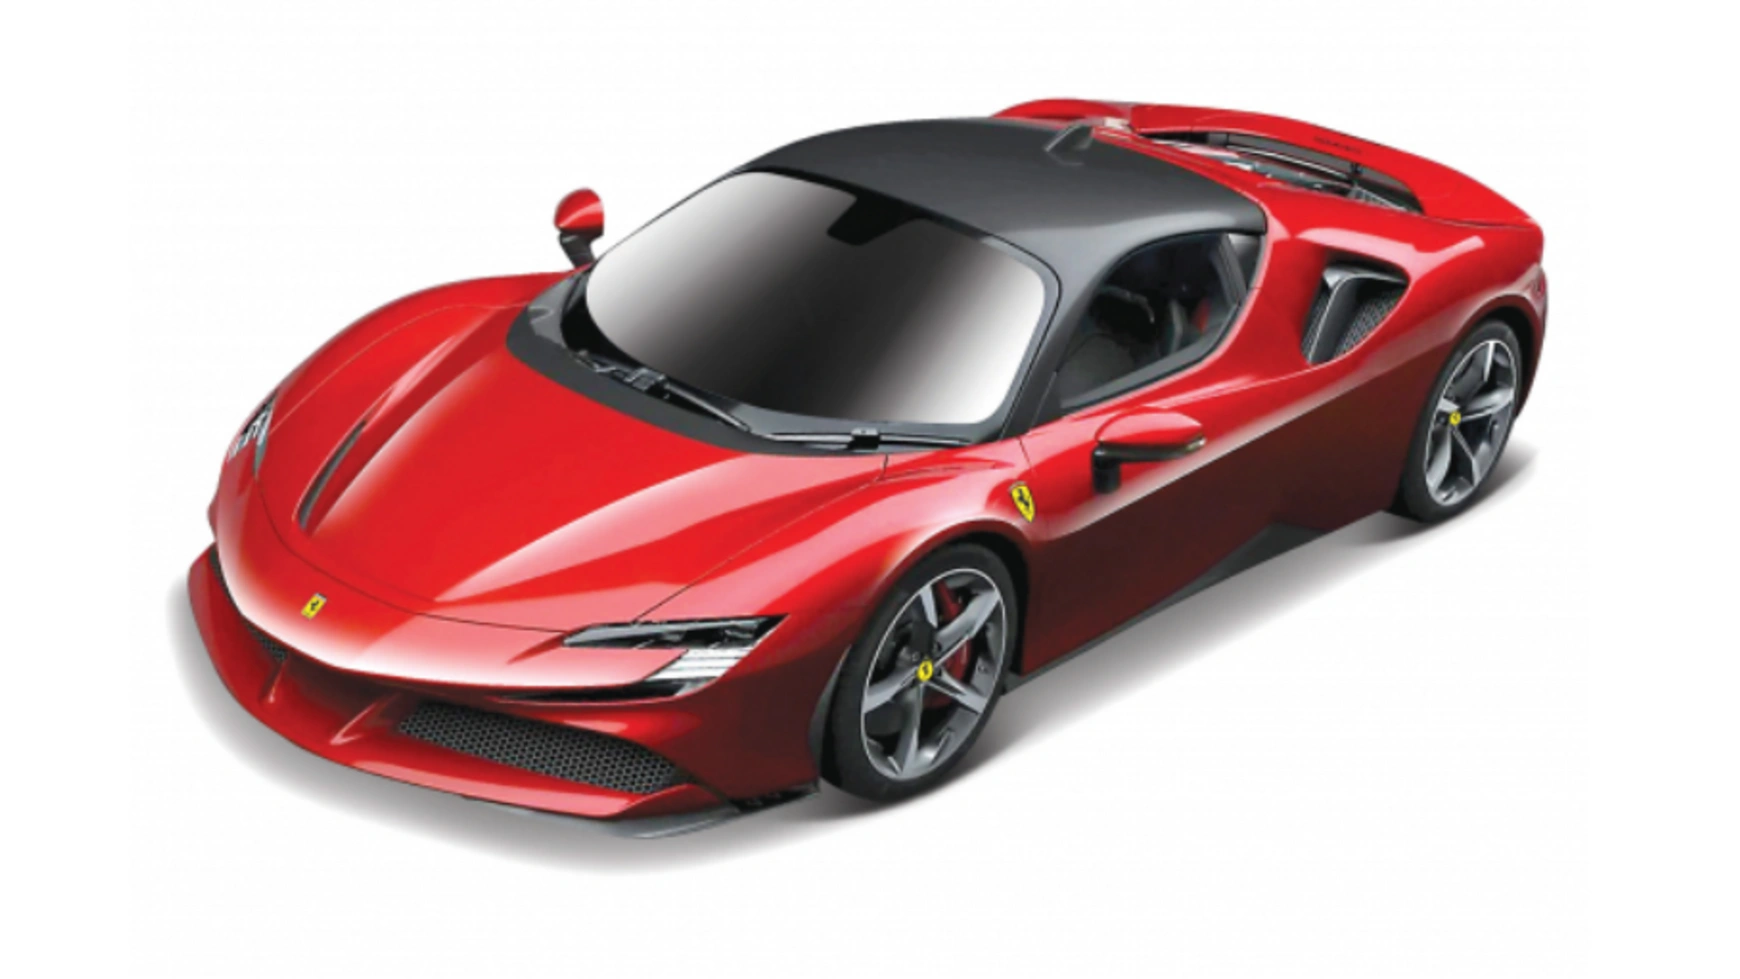 Bburago Ferrari R&P 1:24 Ferrari SF90 Stradale машина р у 1 18 ferrari sf90 stradale 2 4g цвет красный фары светятся 25 9 12 7 7 97500r